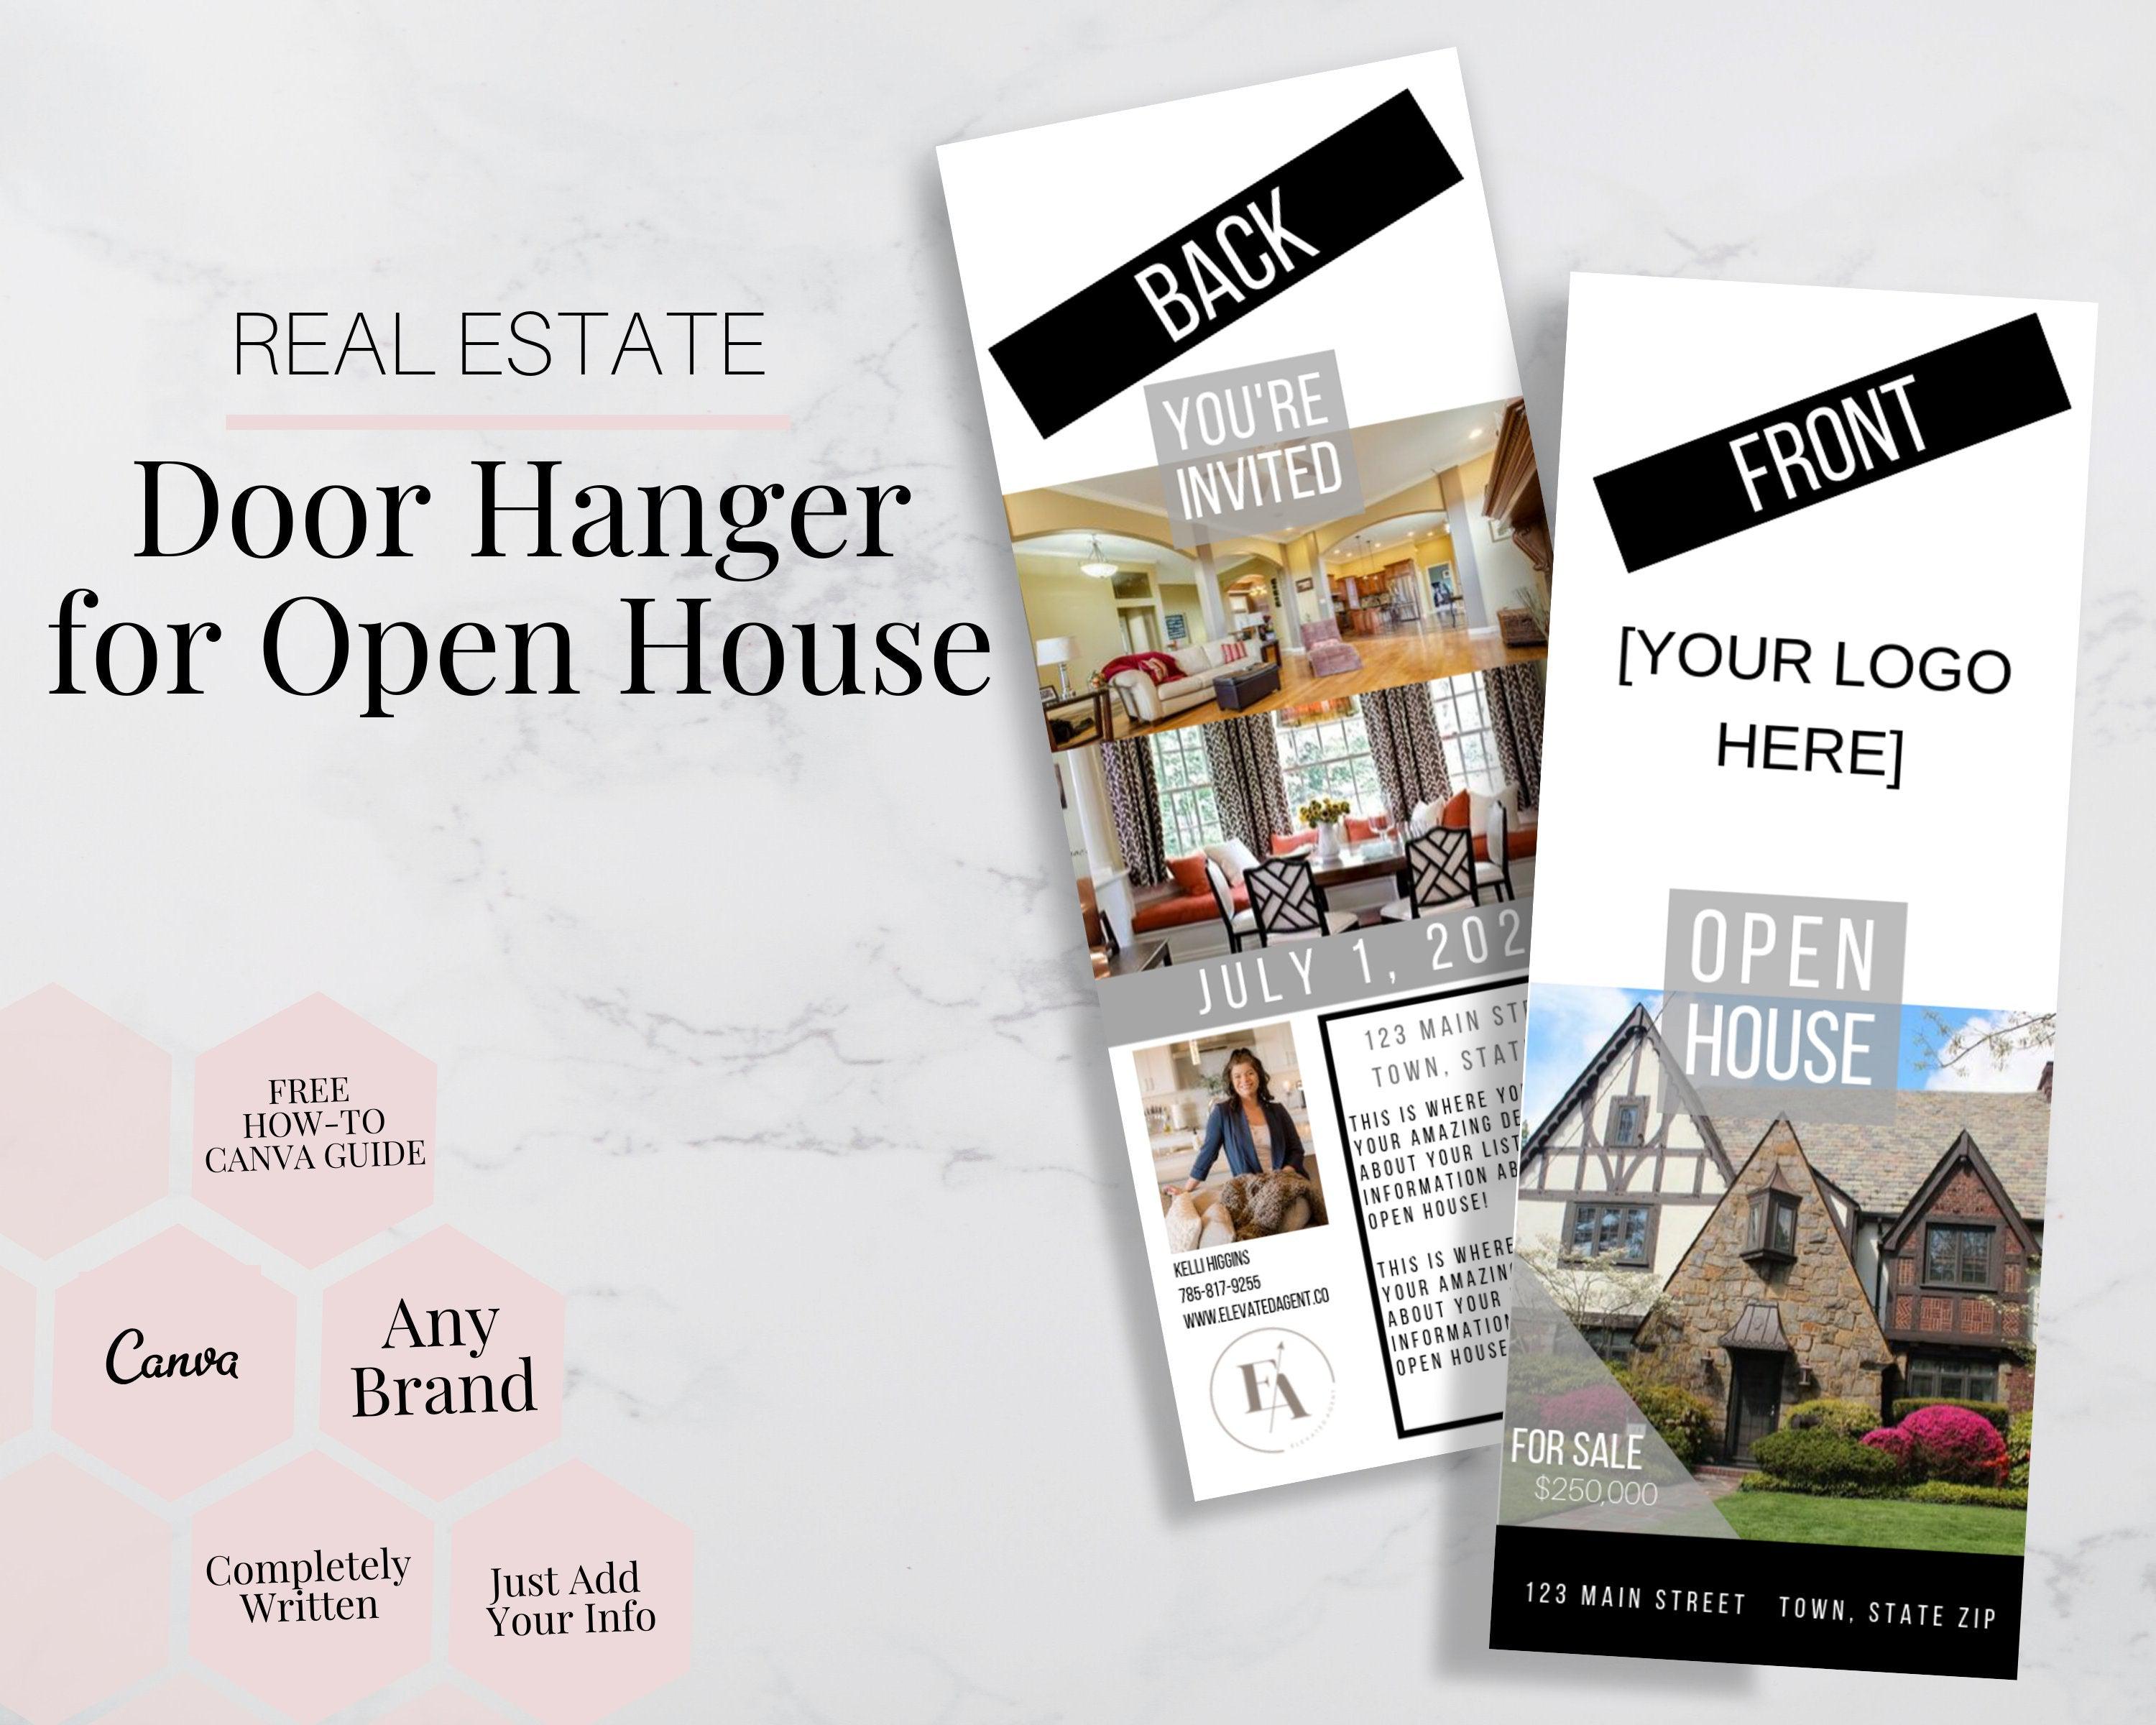 Real-Estate-Open-House-Door-Hanger-Unbranded.jpg